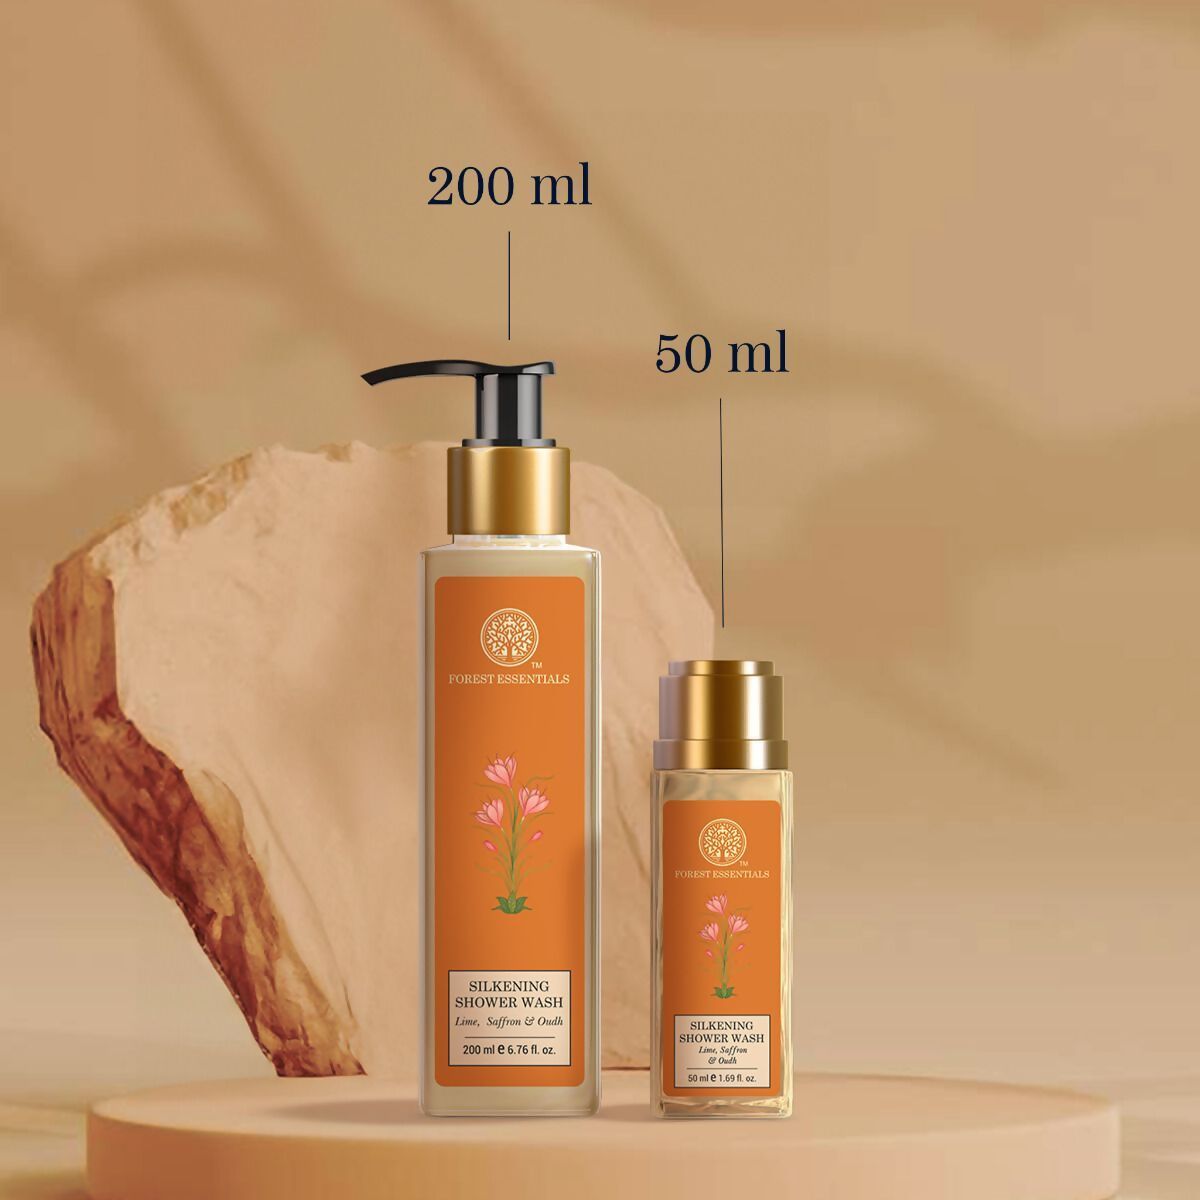 Forest Essentials Silkening Shower Wash Lime Saffron & Oudh - Distacart